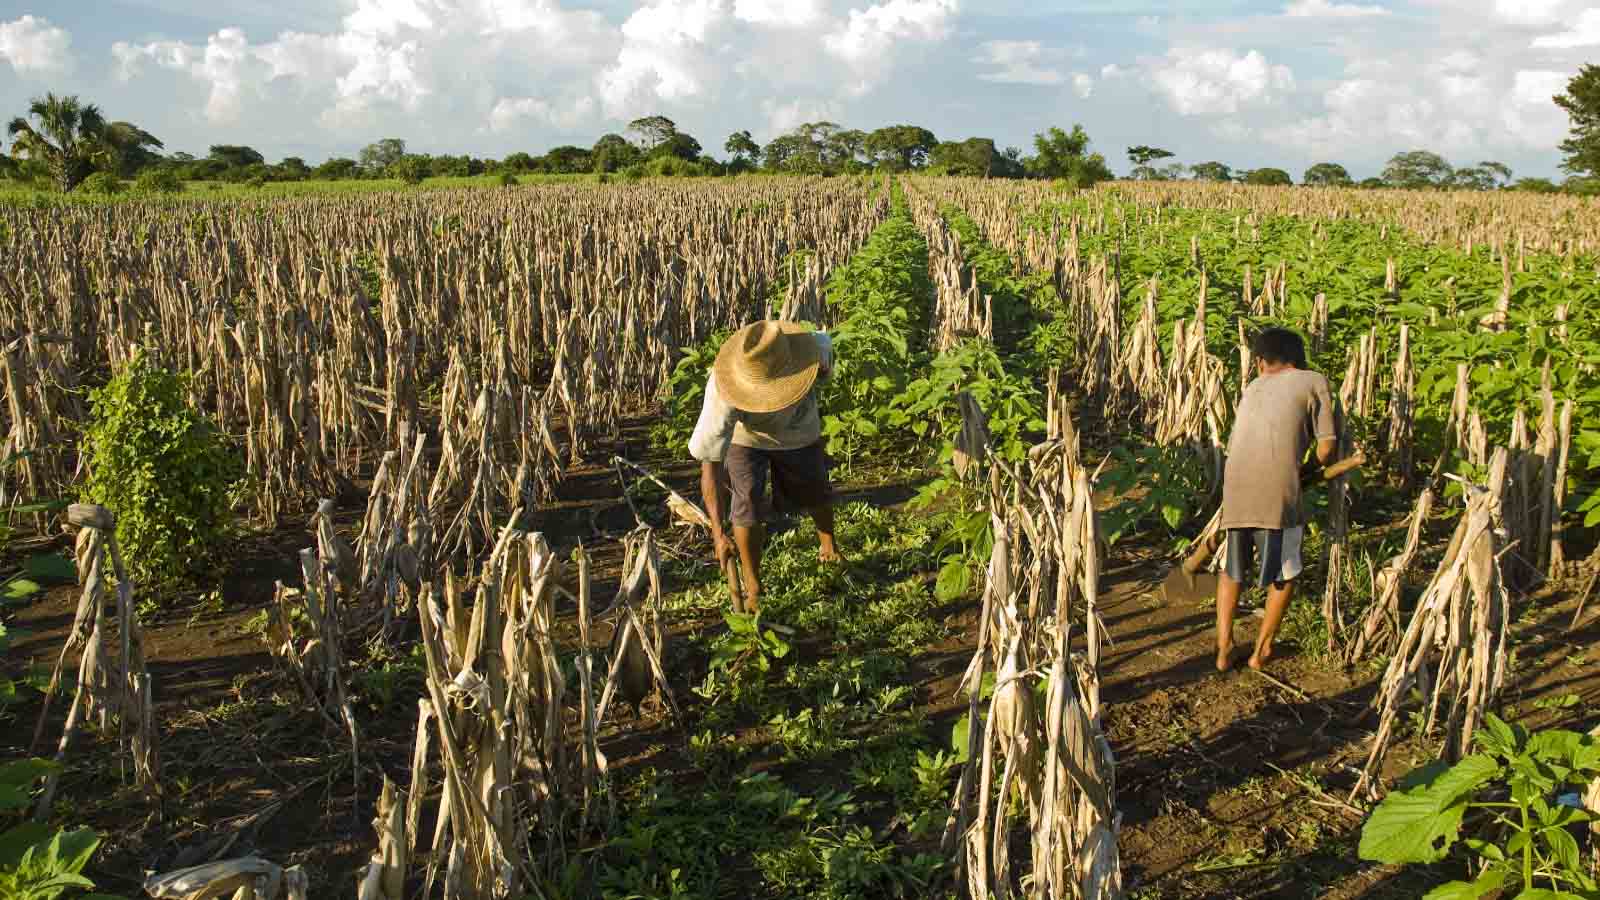 חקלאים בשדה תירס בגואטמלה (צילום: Shutterstock)